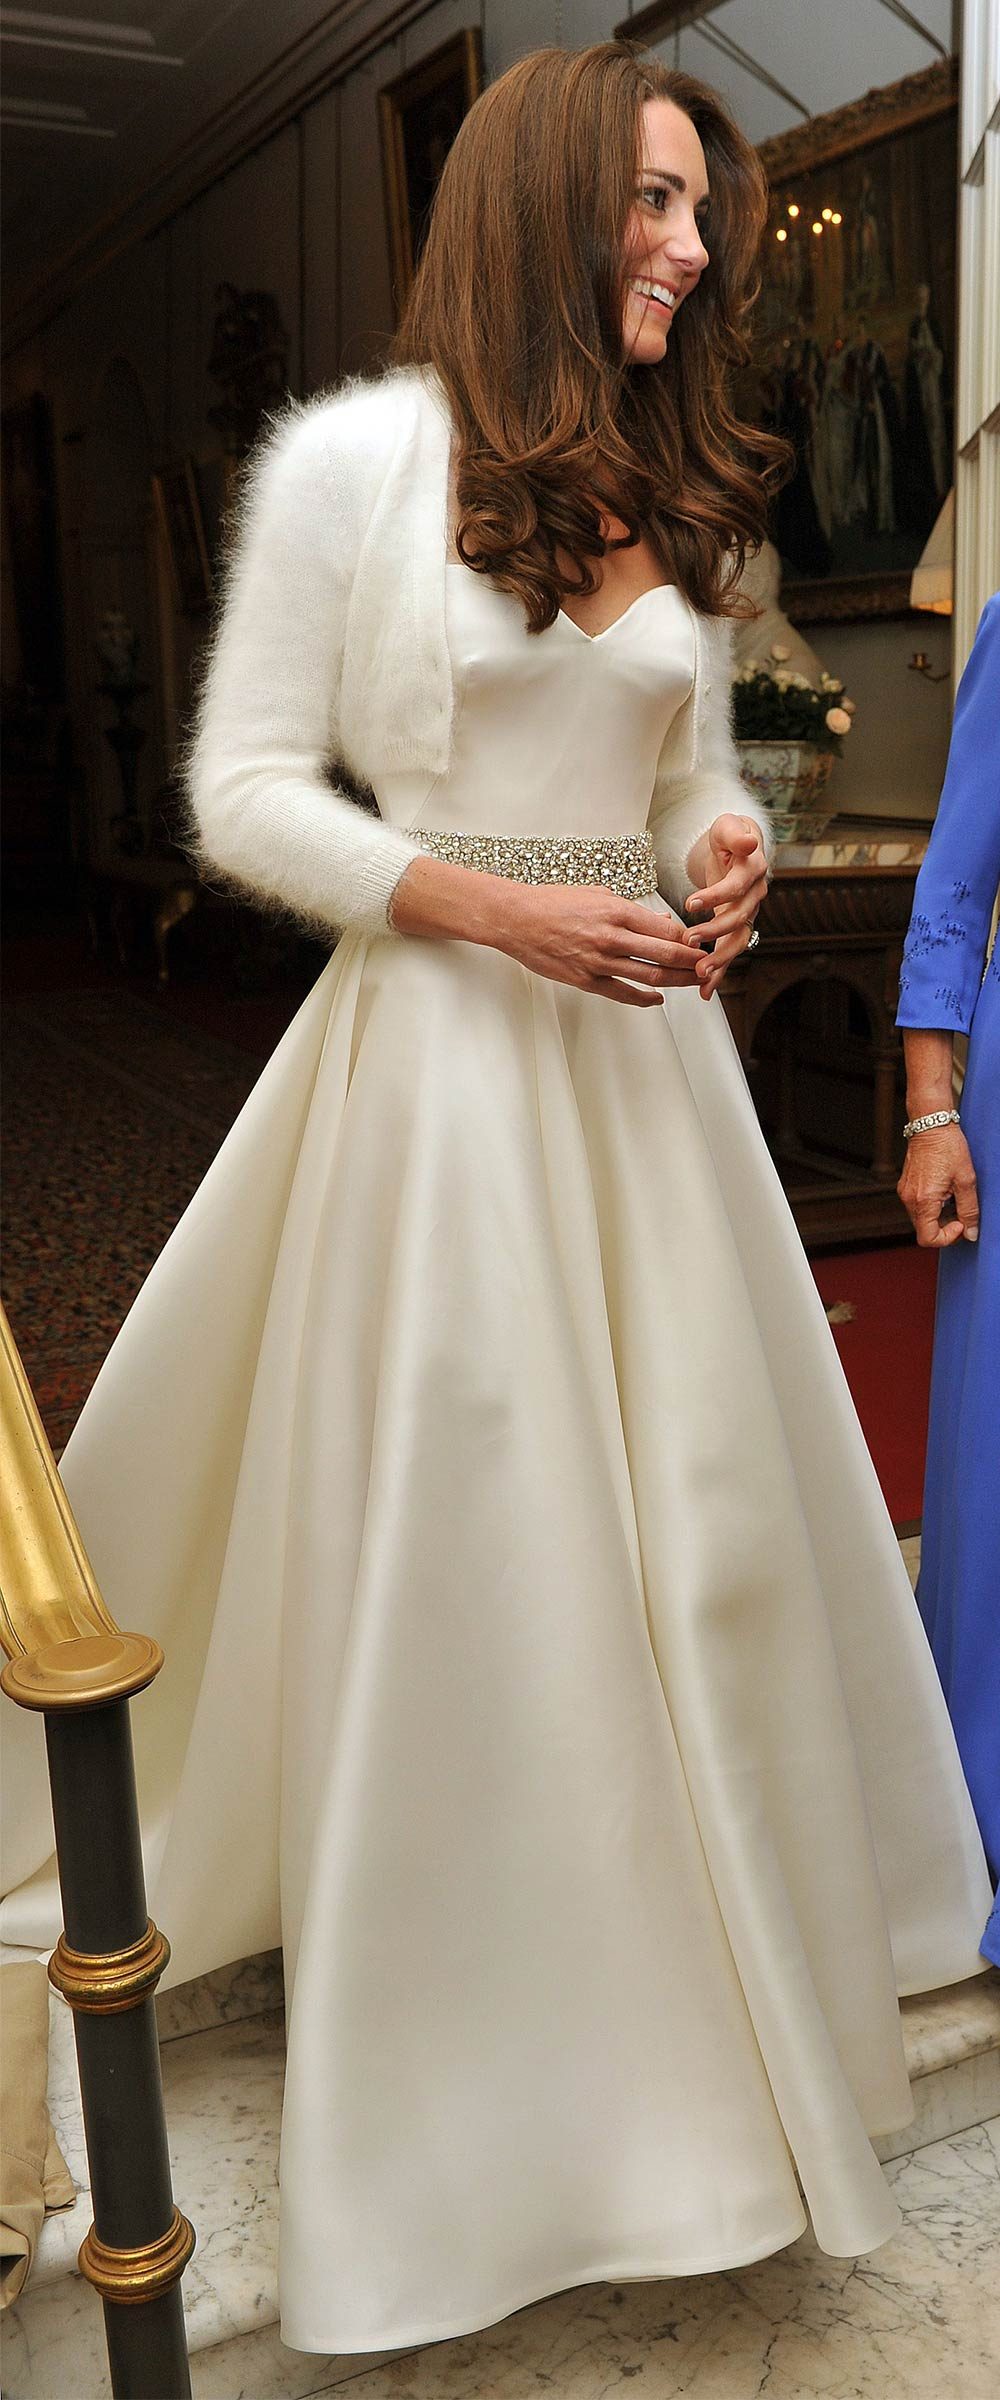 molekyle Ondartet pen Kate Middleton's Second Wedding Dress | Reader's Digest